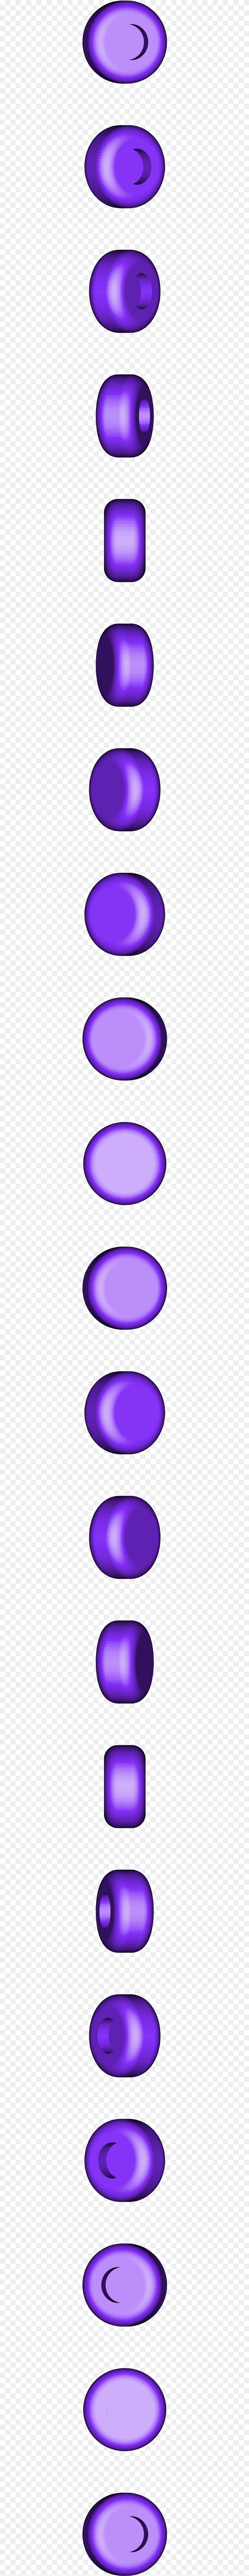 Circle, Lighting, Purple, Light, Spiral Free Png